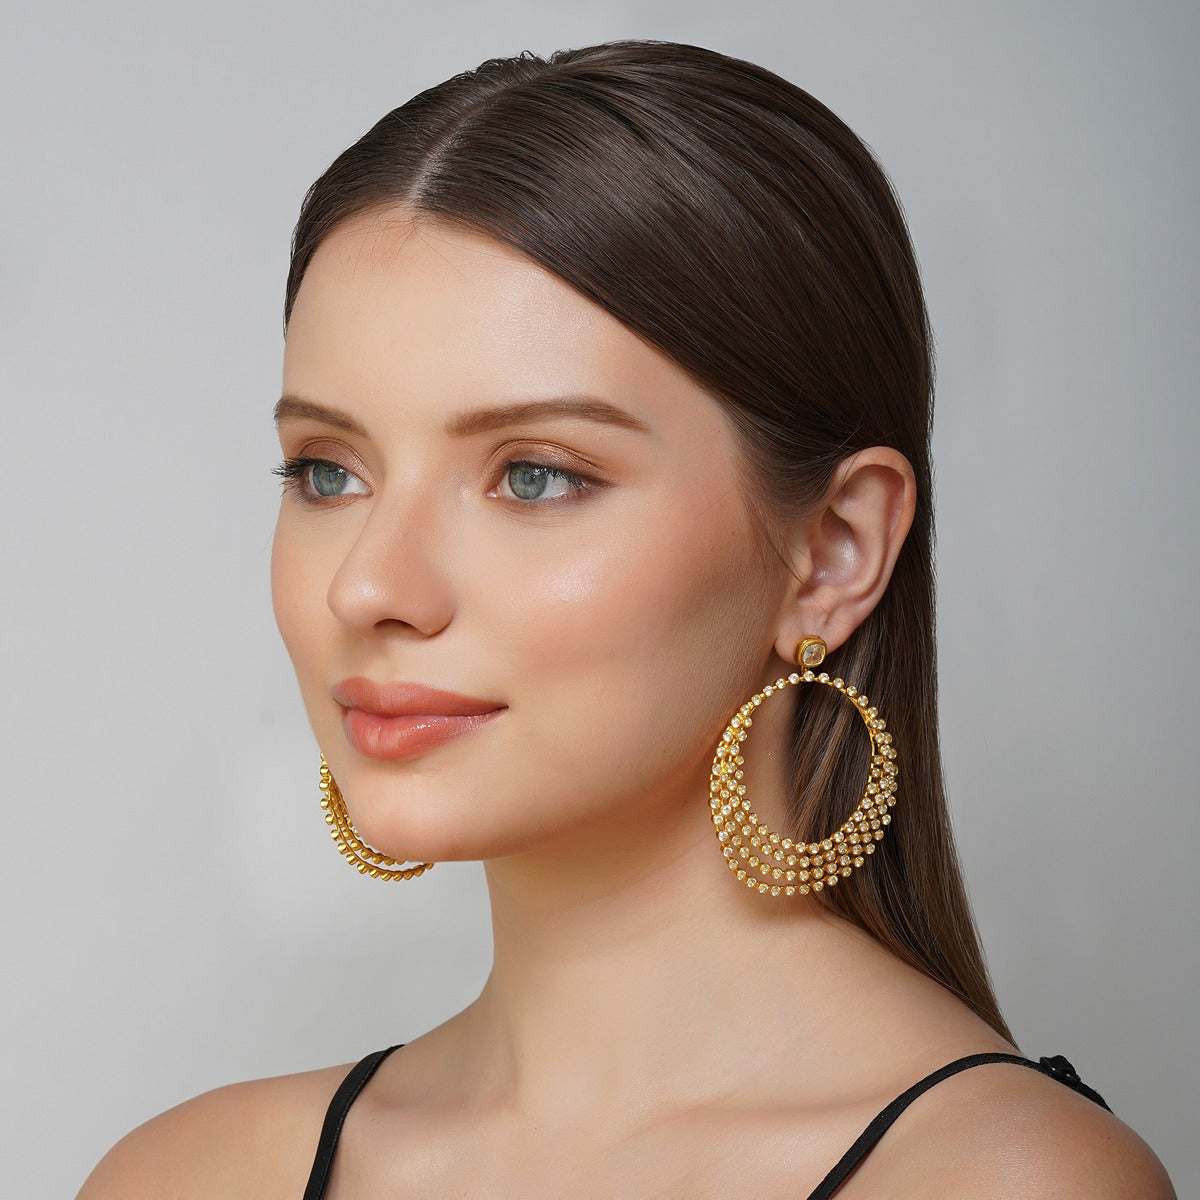 Buy Vintage Shoulder Dusters Earrings Online in India - Etsy